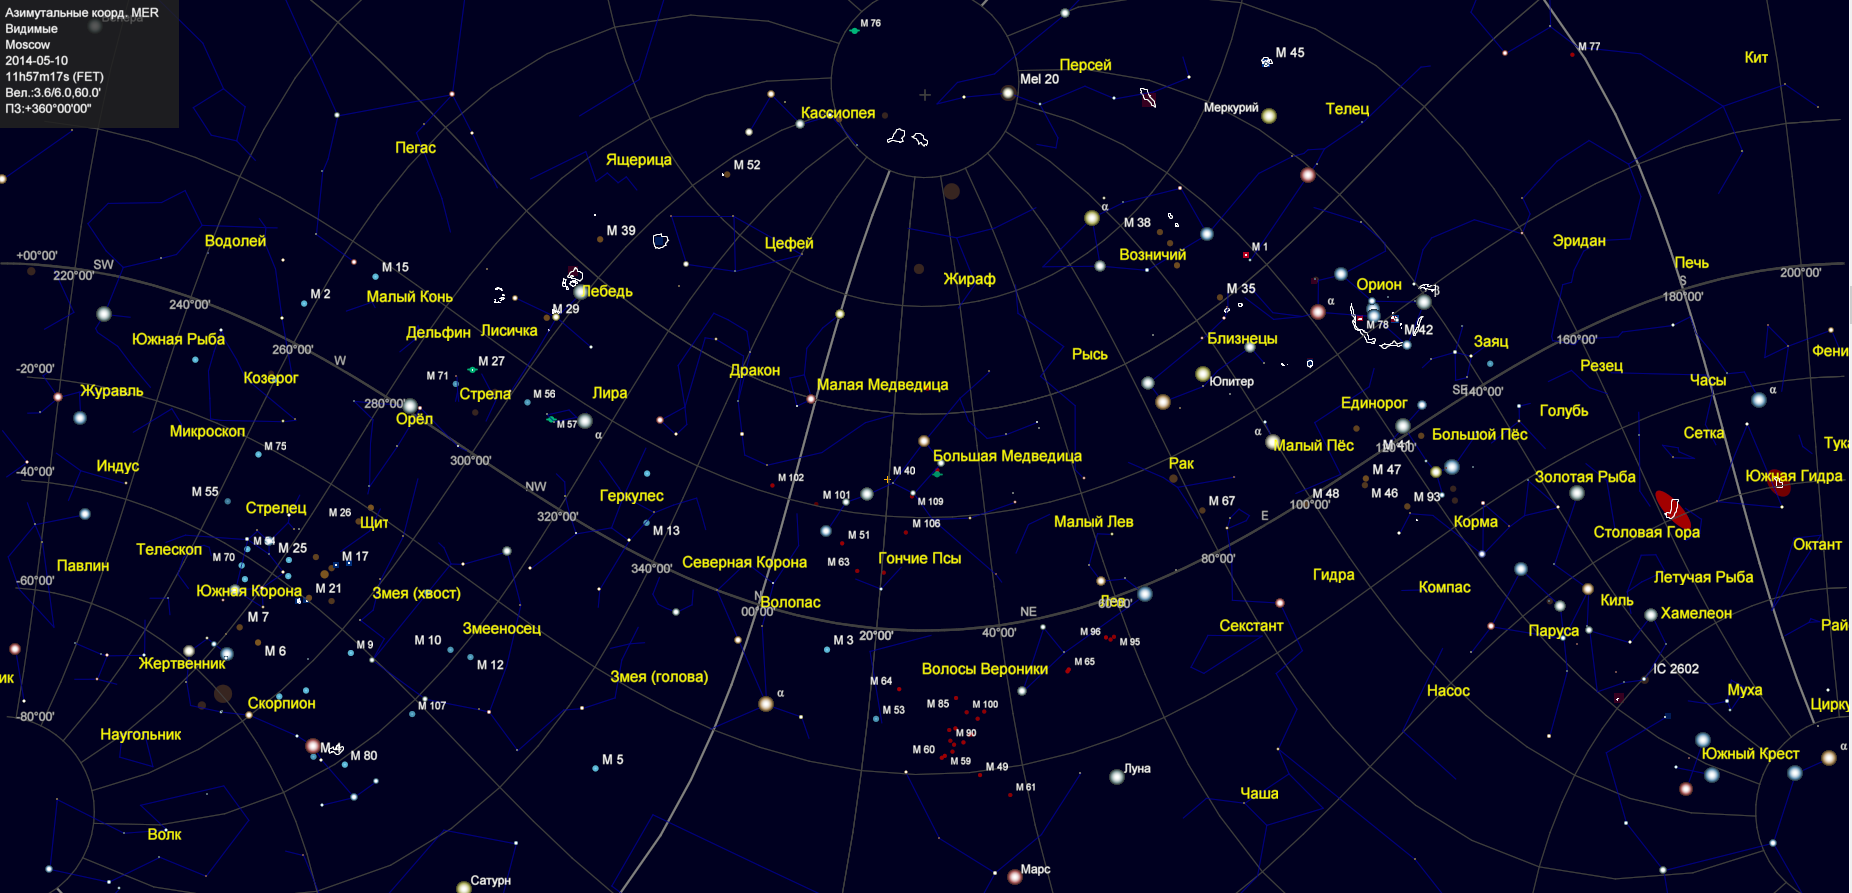 Сколько всего созвездий на небе. Созвездие Плеяды на карте звездного неба. Карта звездного неба с названиями звезд Северного полушария. Полярная звезда на карте звездного неба Северного полушария. Карта звездного неба 88 созвездий.